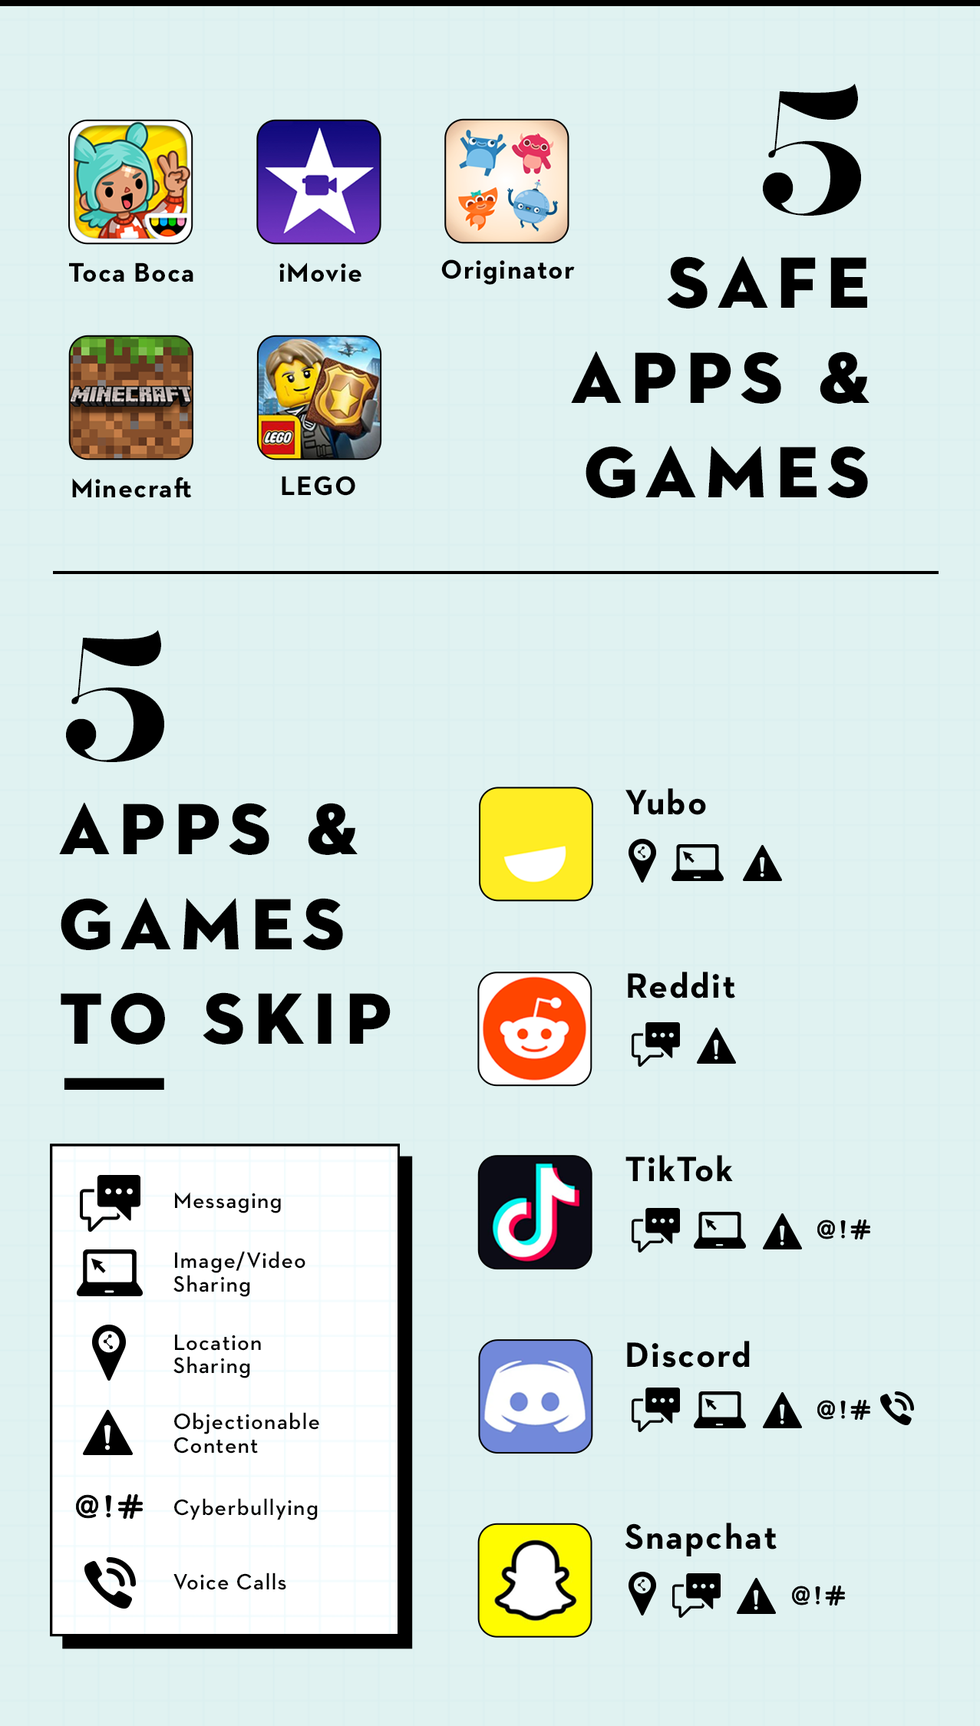 5 Safe Apps/5 Apps to Skip